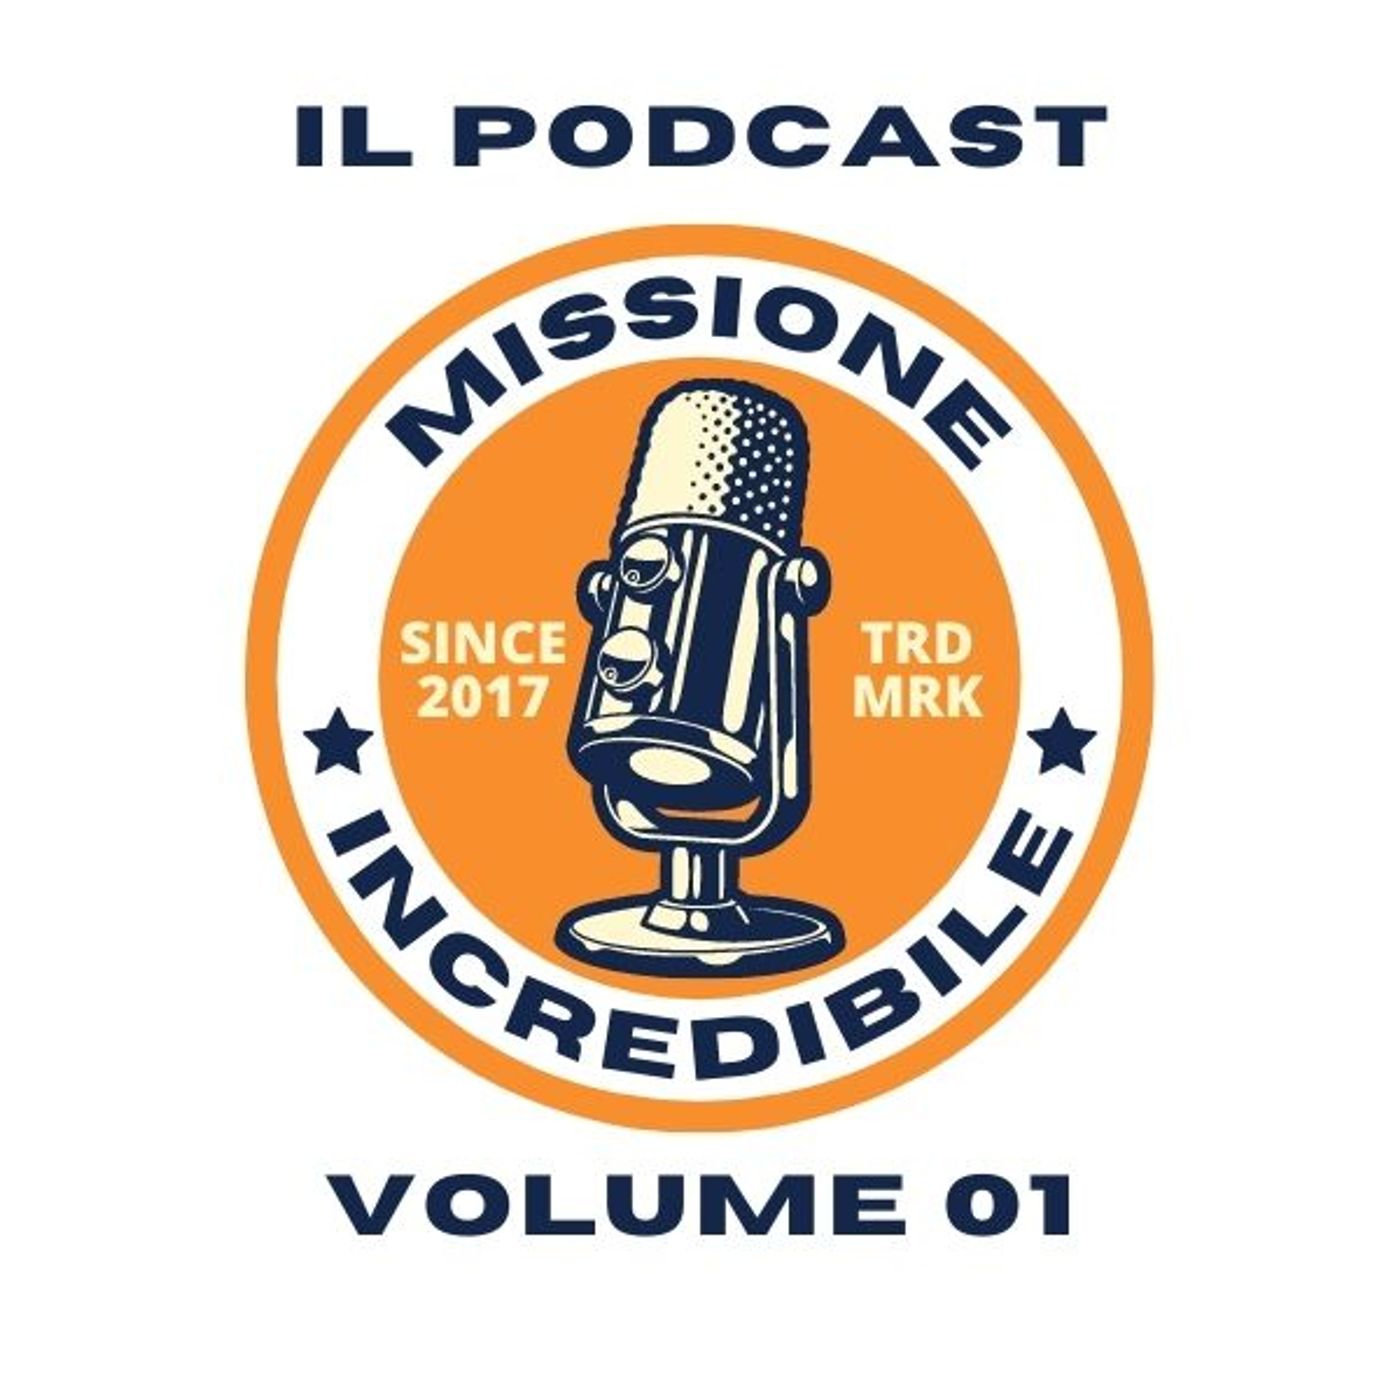 Missione Incredibile, il Podcast, Volume 01